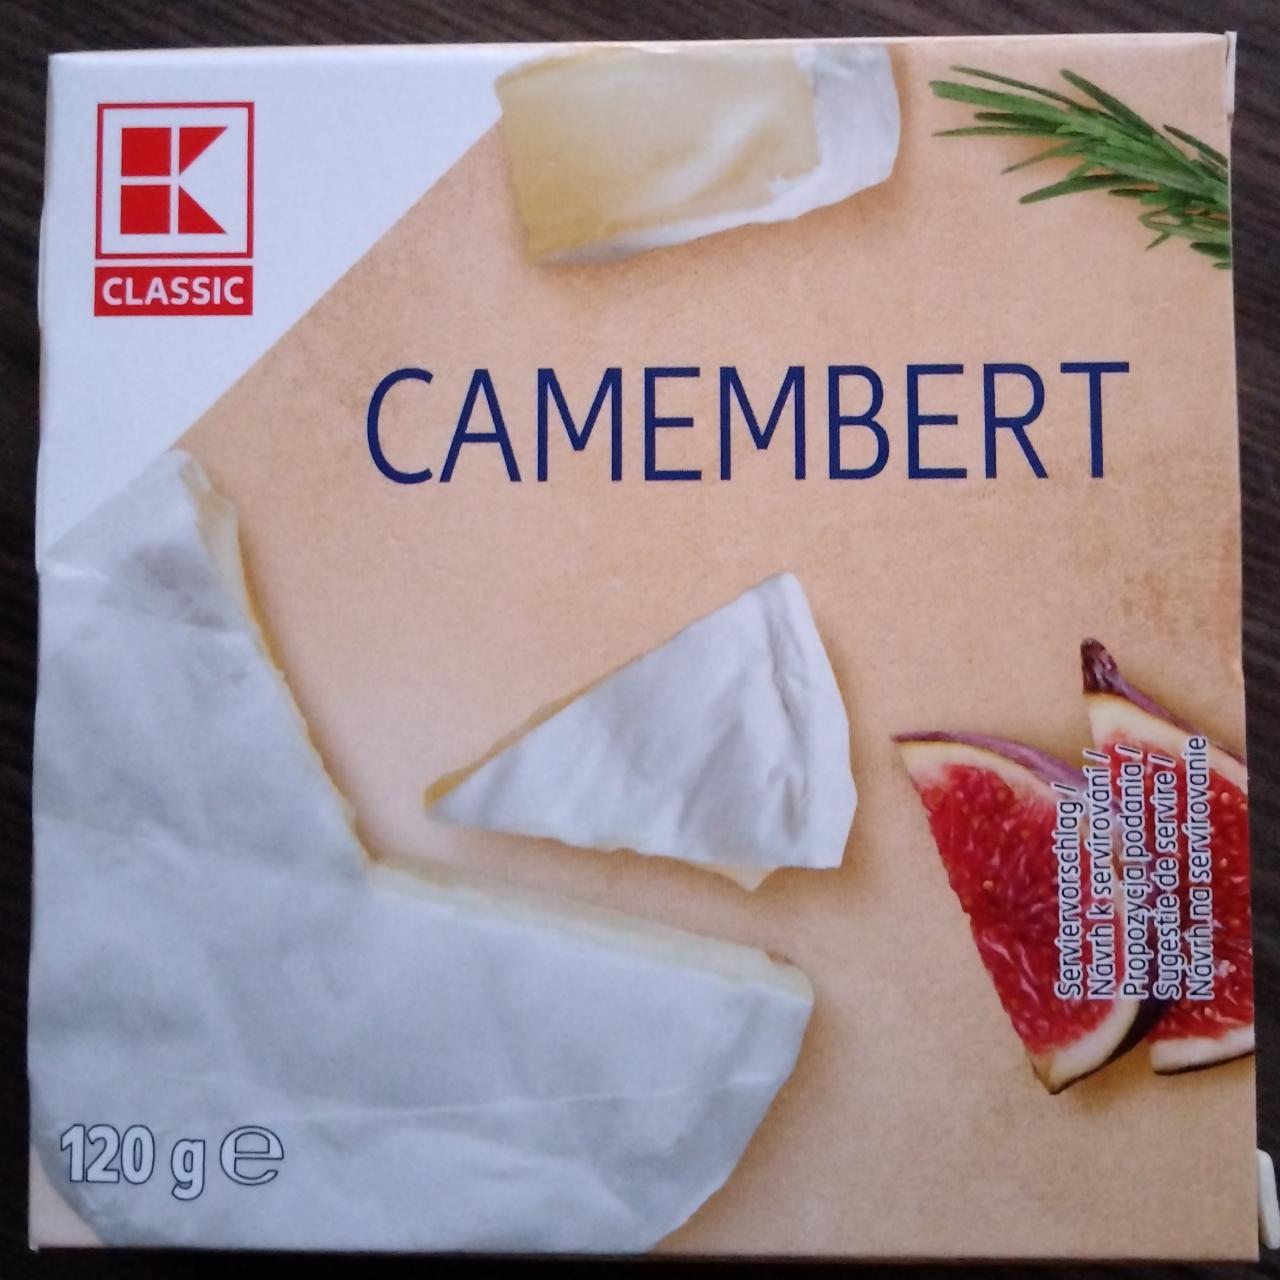 Fotografie - Camembert K-Classic 52% tuku